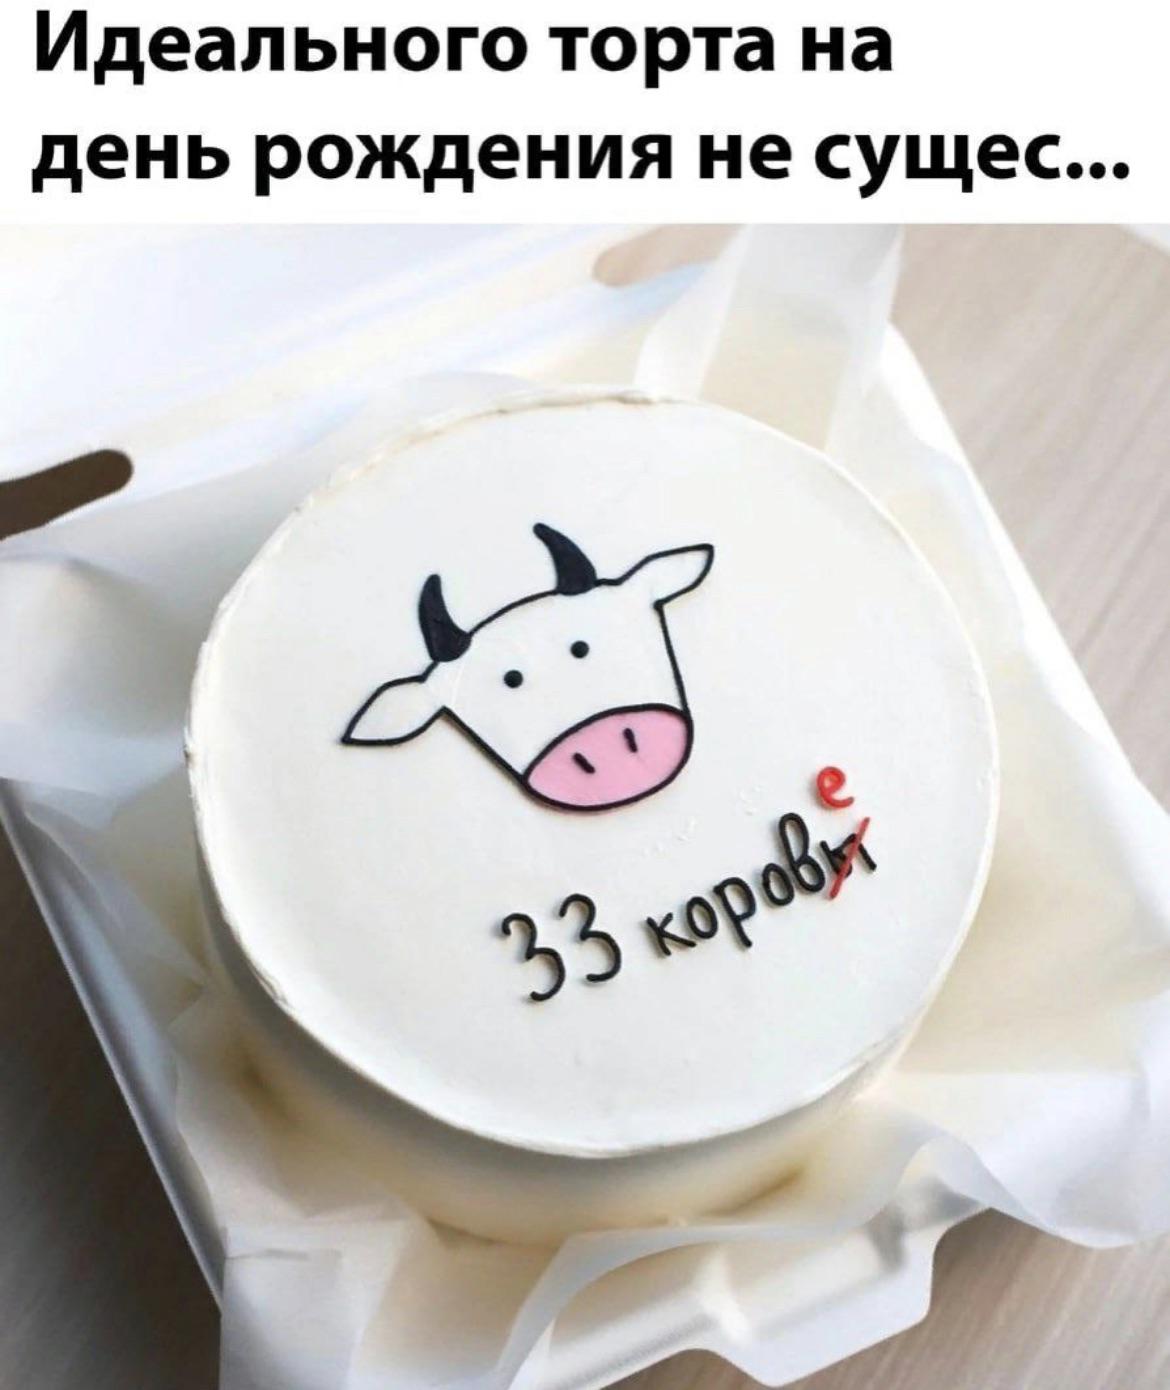 Идеального торта на день рождения не существует...
33 коровы(е)...